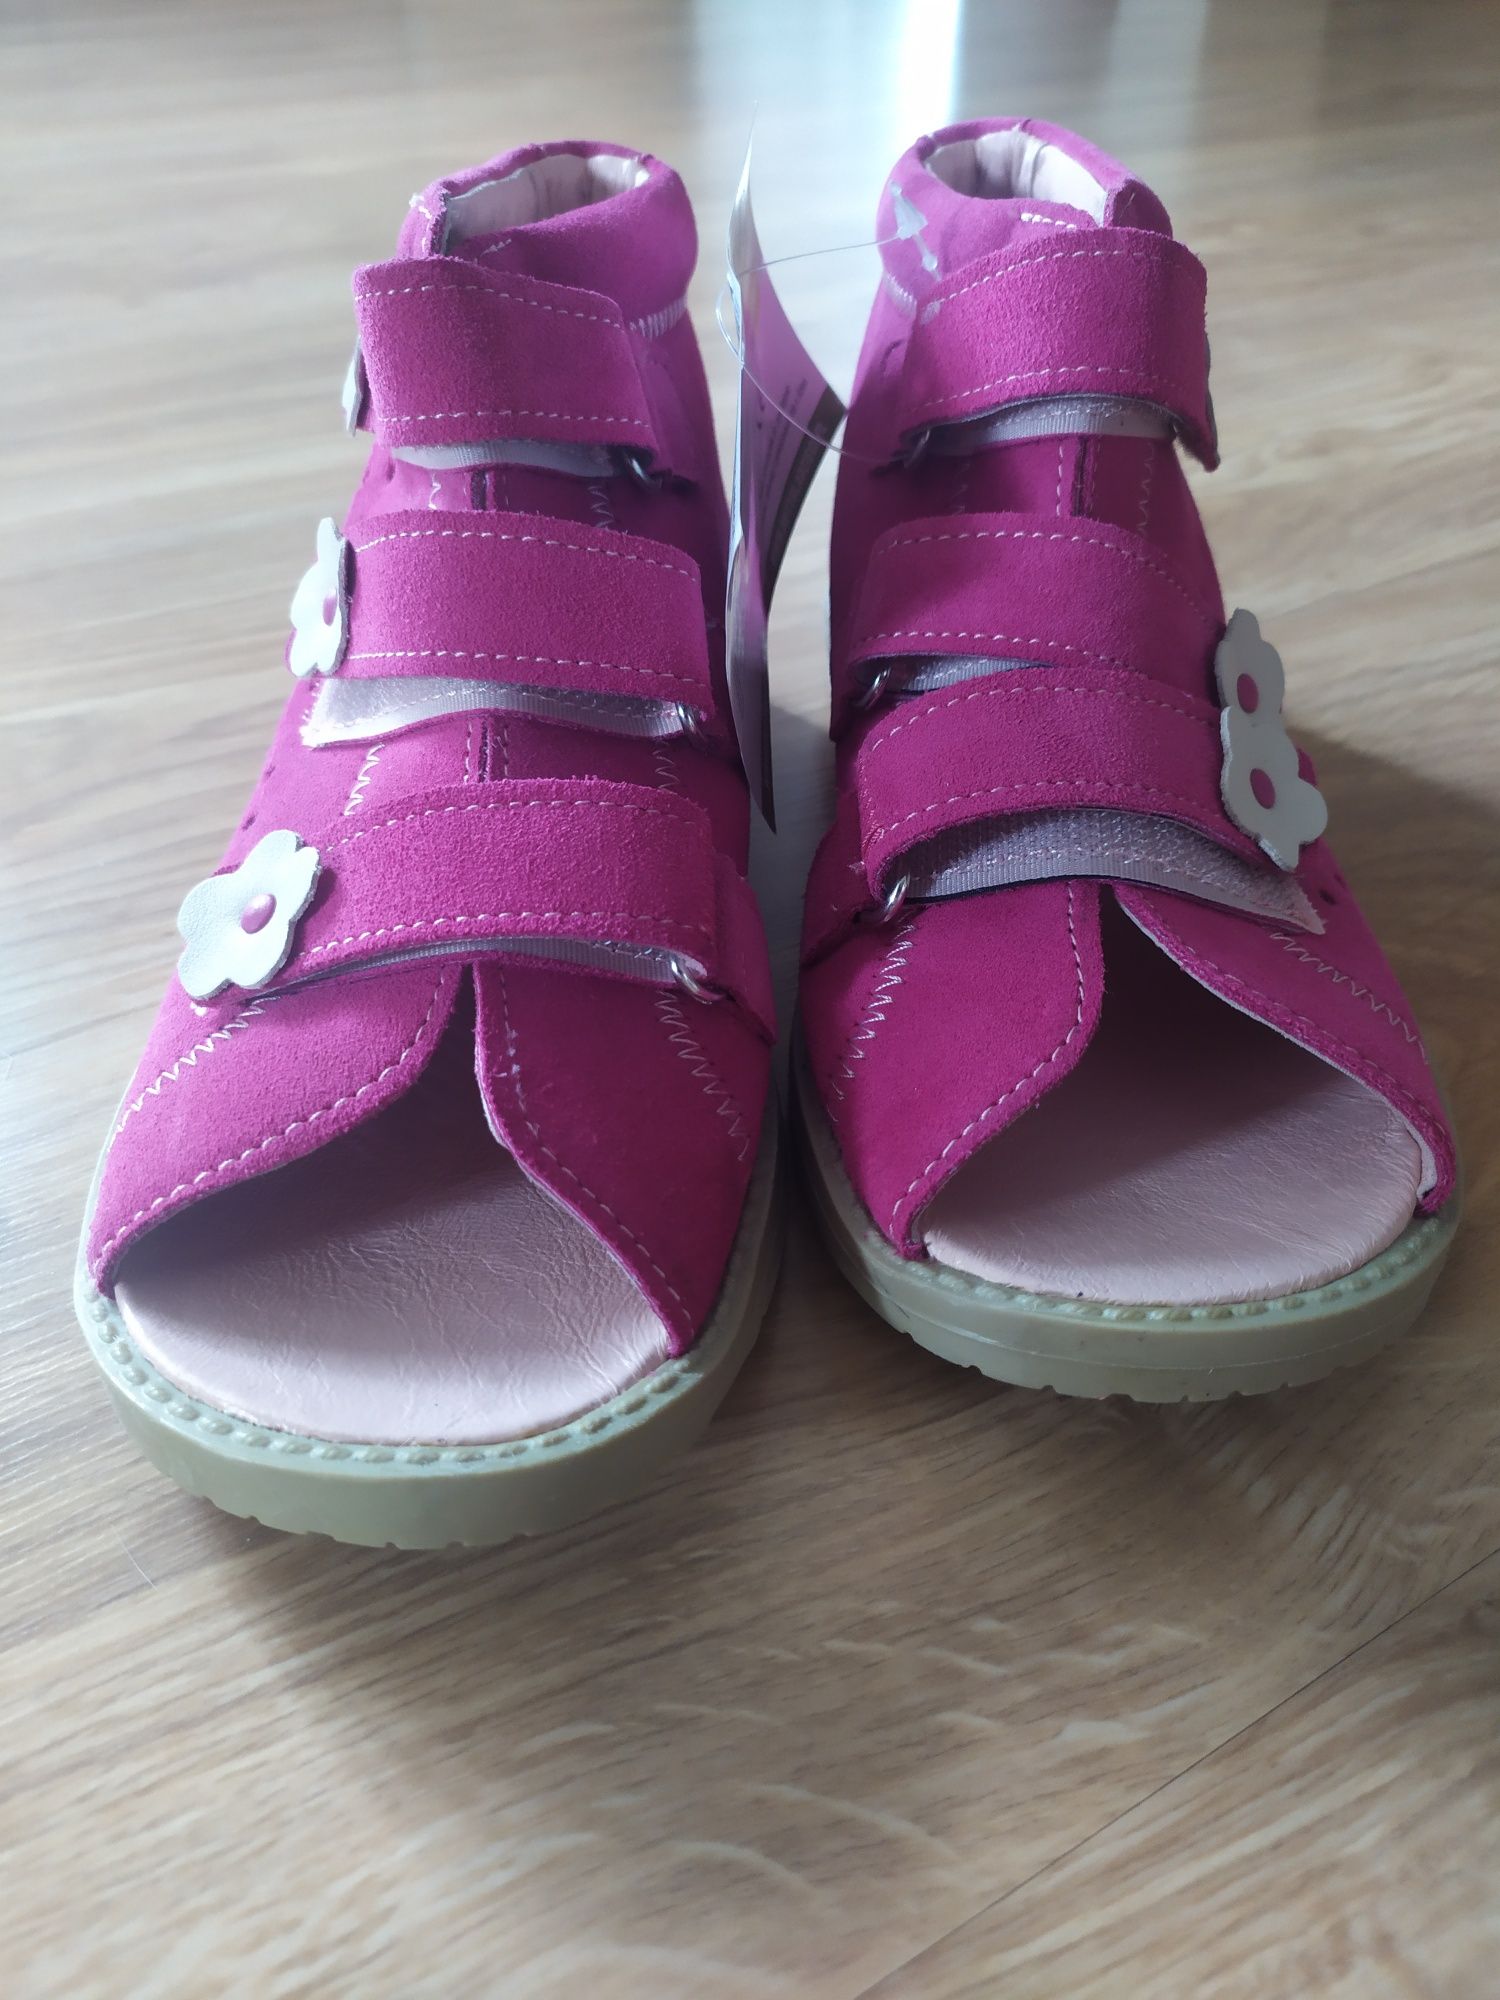 Buty ortopedyczne dla dziecka